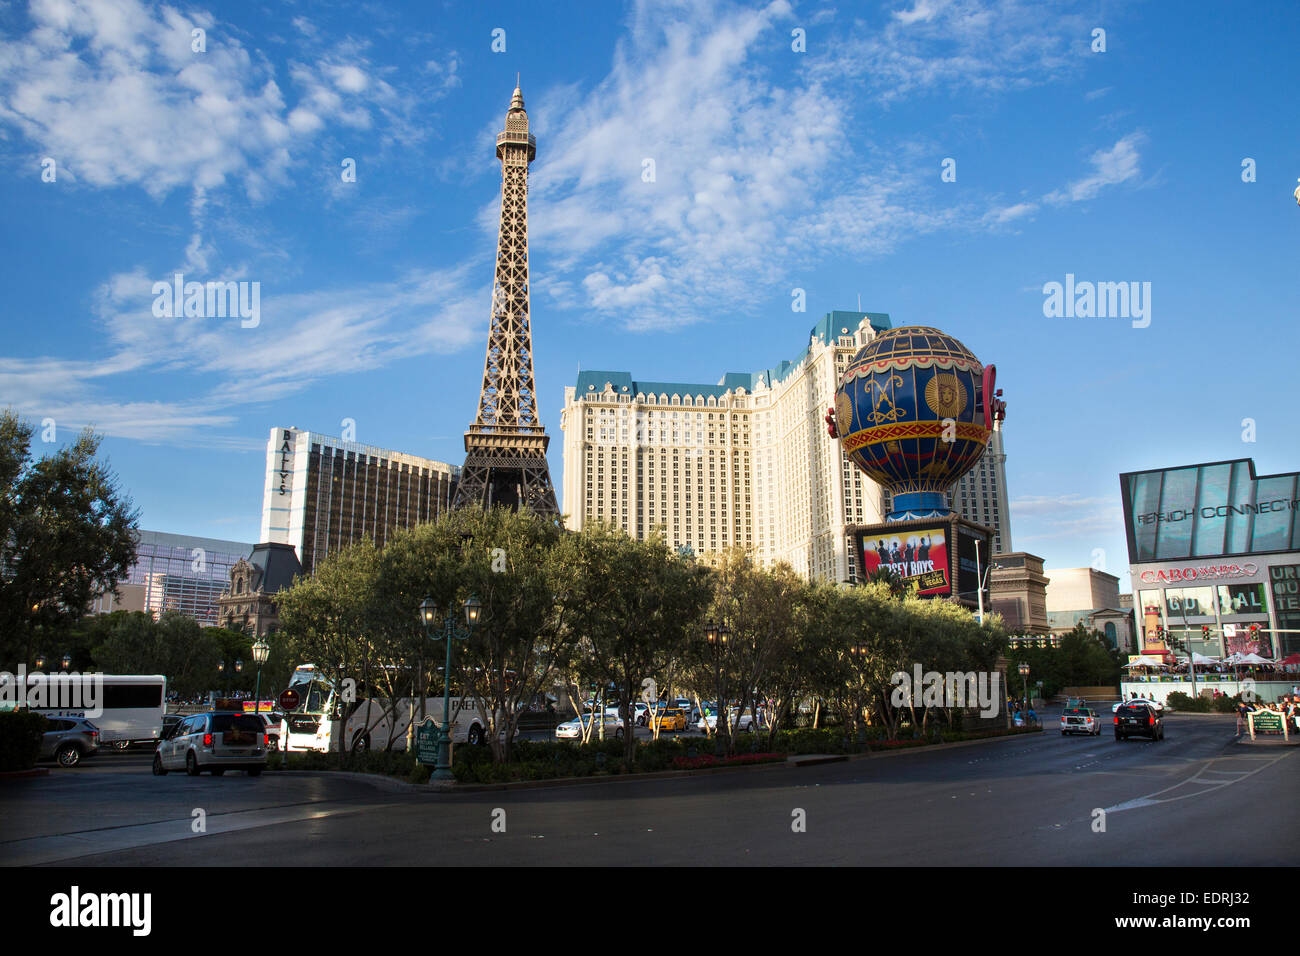 Das Eiffel Tower Restaurant im Paris Hotel und Casino Bellagio Fountains am Las Vegas Strip in Paradies, Nevada. Stockfoto